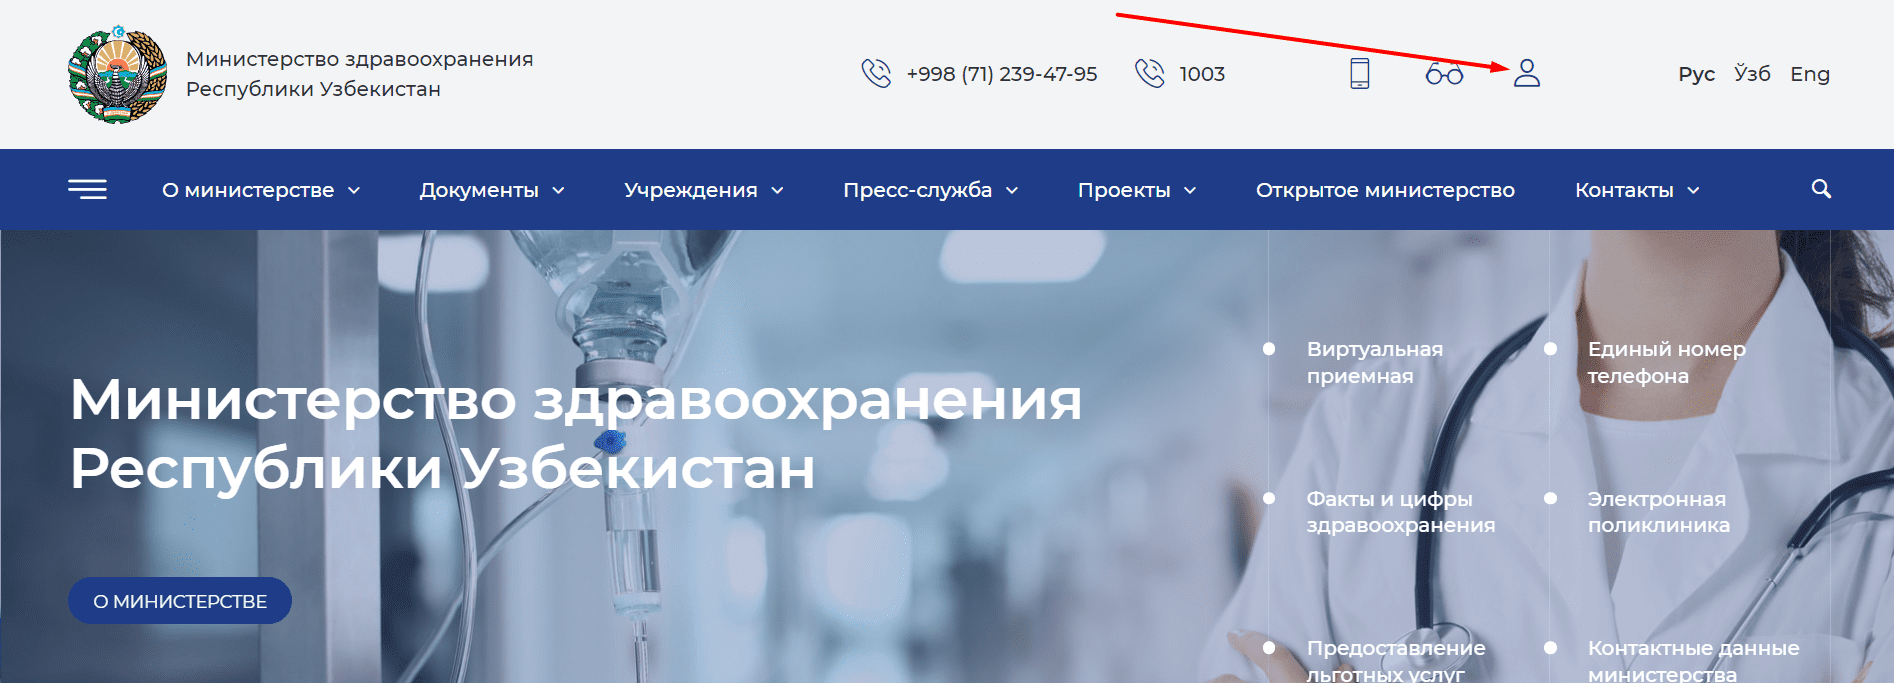 Министерство здравоохранения Республики Узбекистан (ssv.uz)